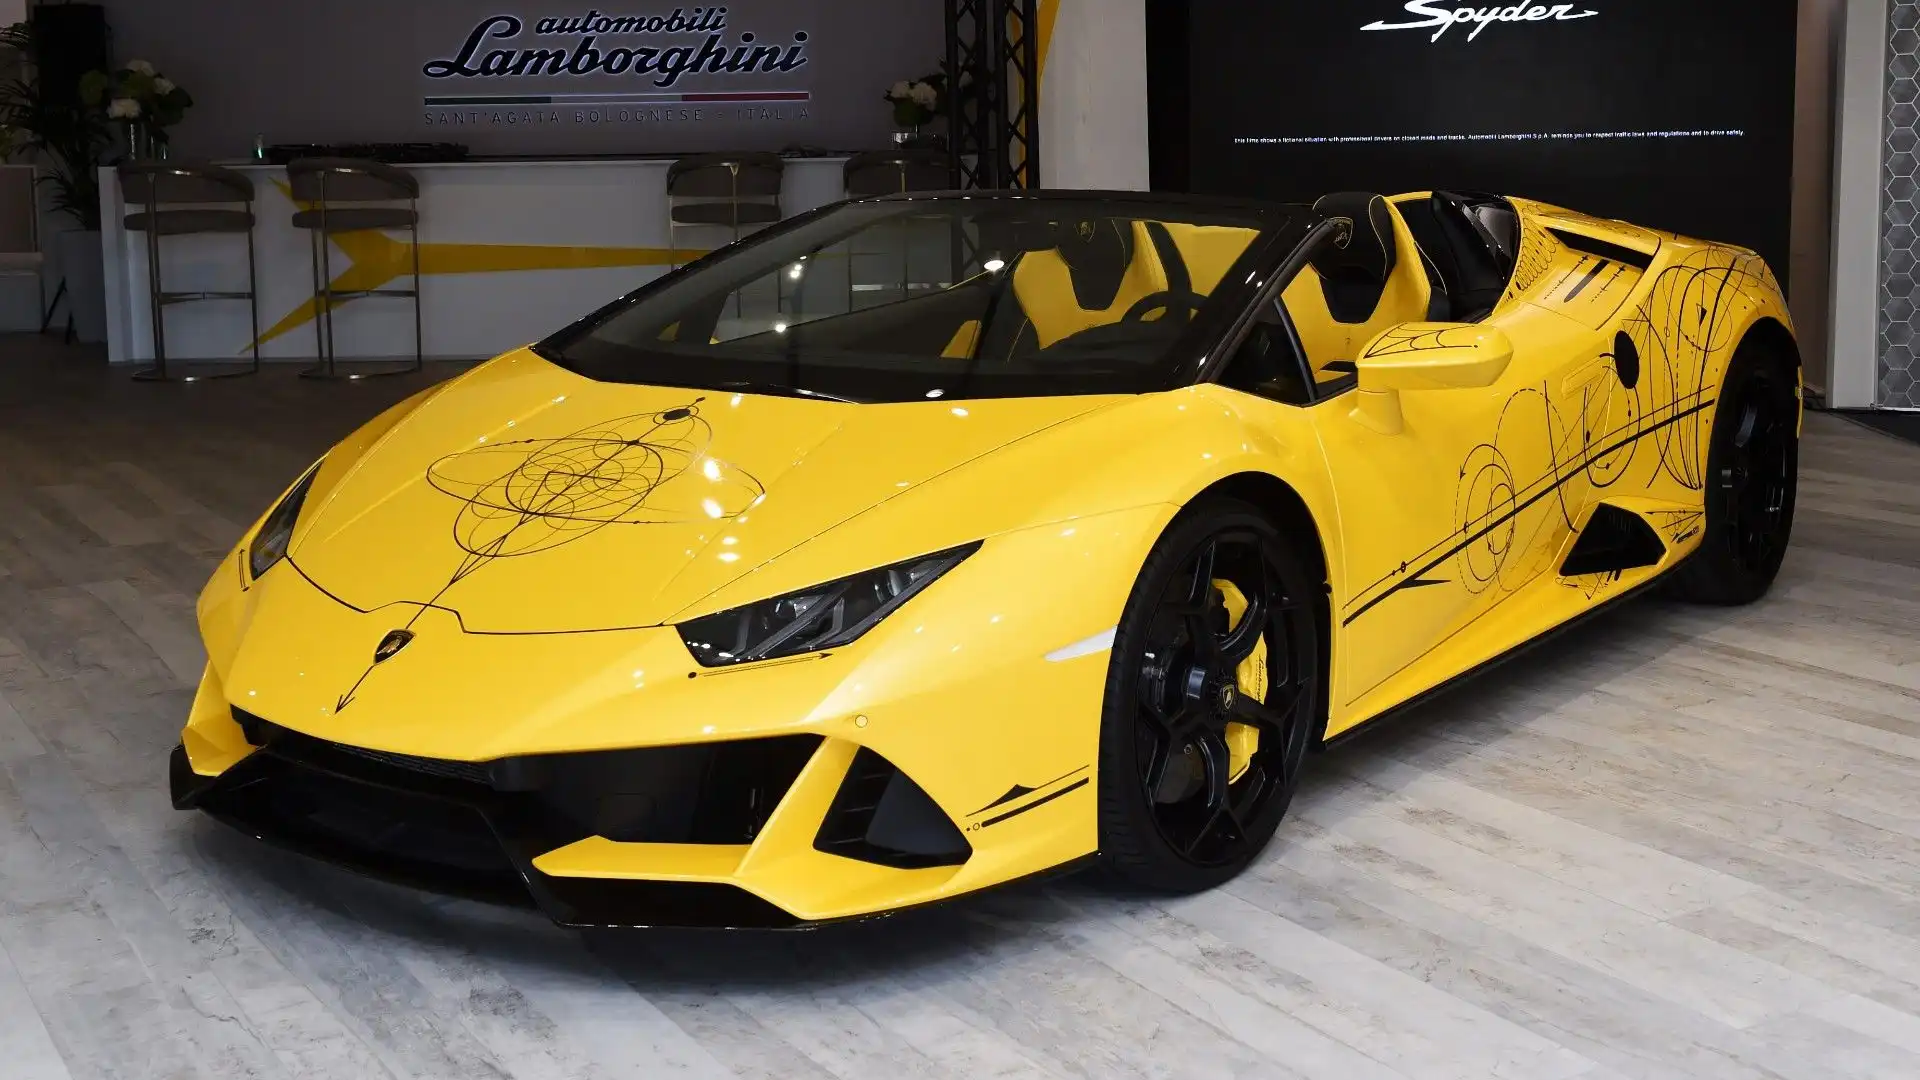 Questa Lamborghini raggiunge una velocità massima di 325 km/h